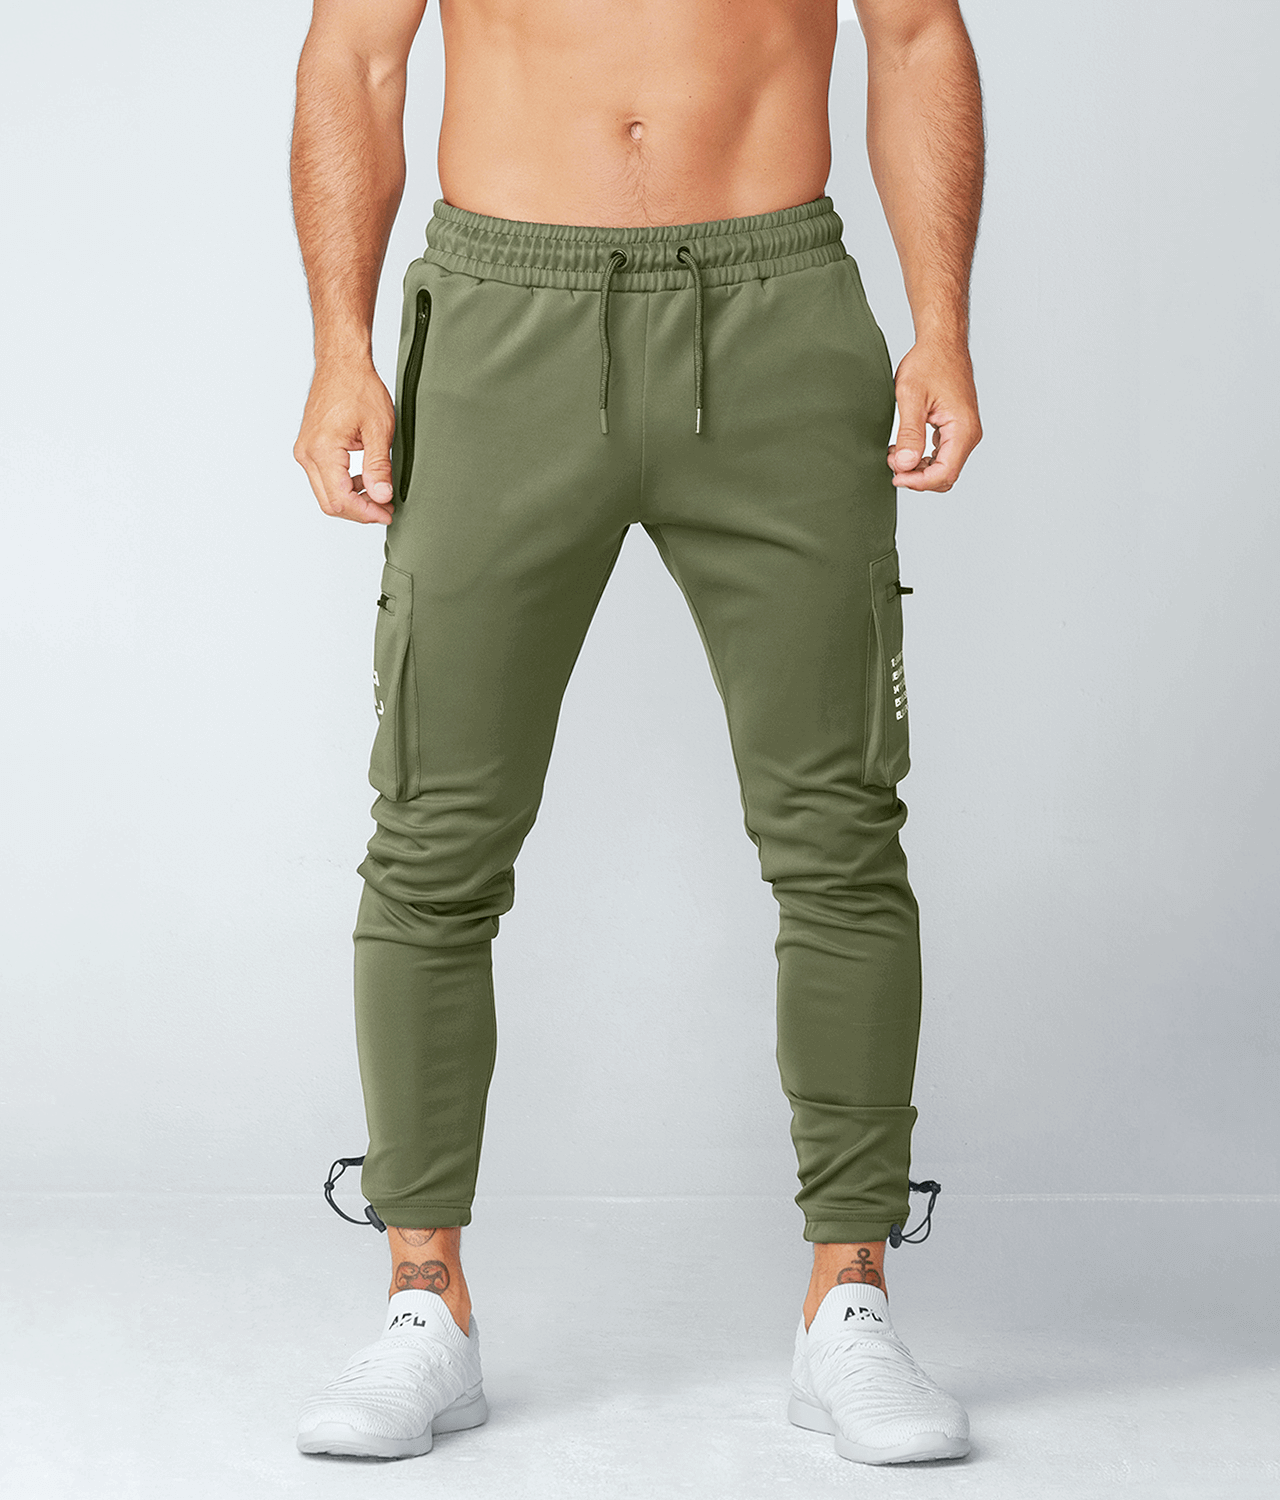 Light Green Solid Jogger Pants - Selling Fast at Pantaloons.com